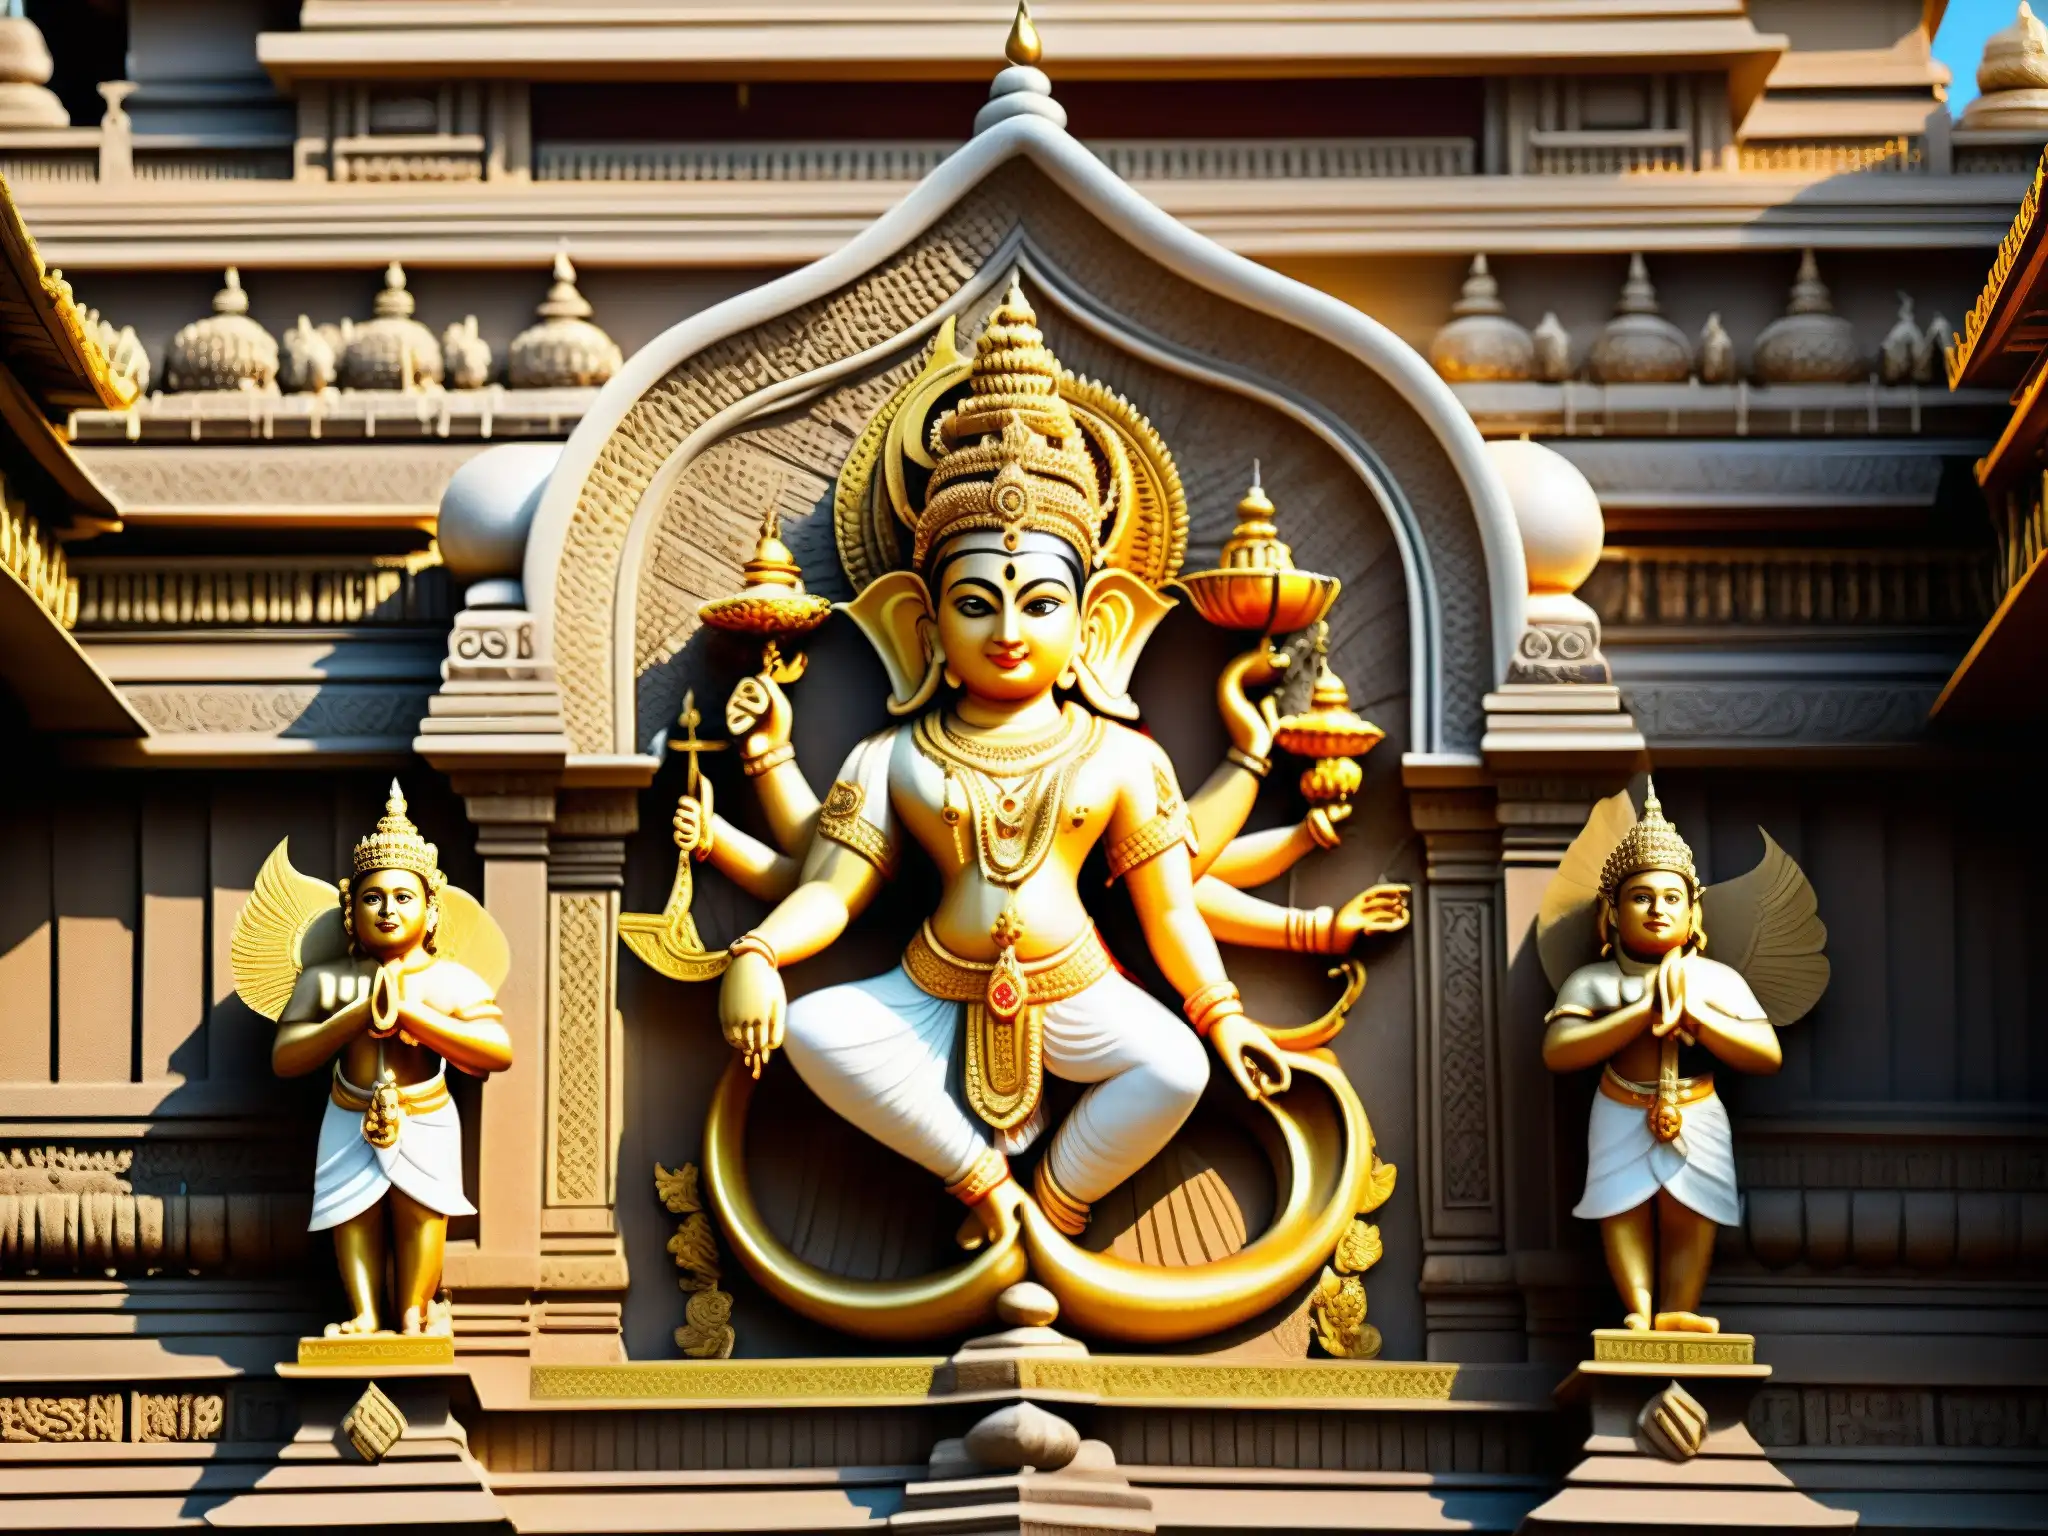 Misterios del Templo Padmanabhaswamy: Intrincadas esculturas y grabados en piedra bañados por la cálida luz dorada del sol